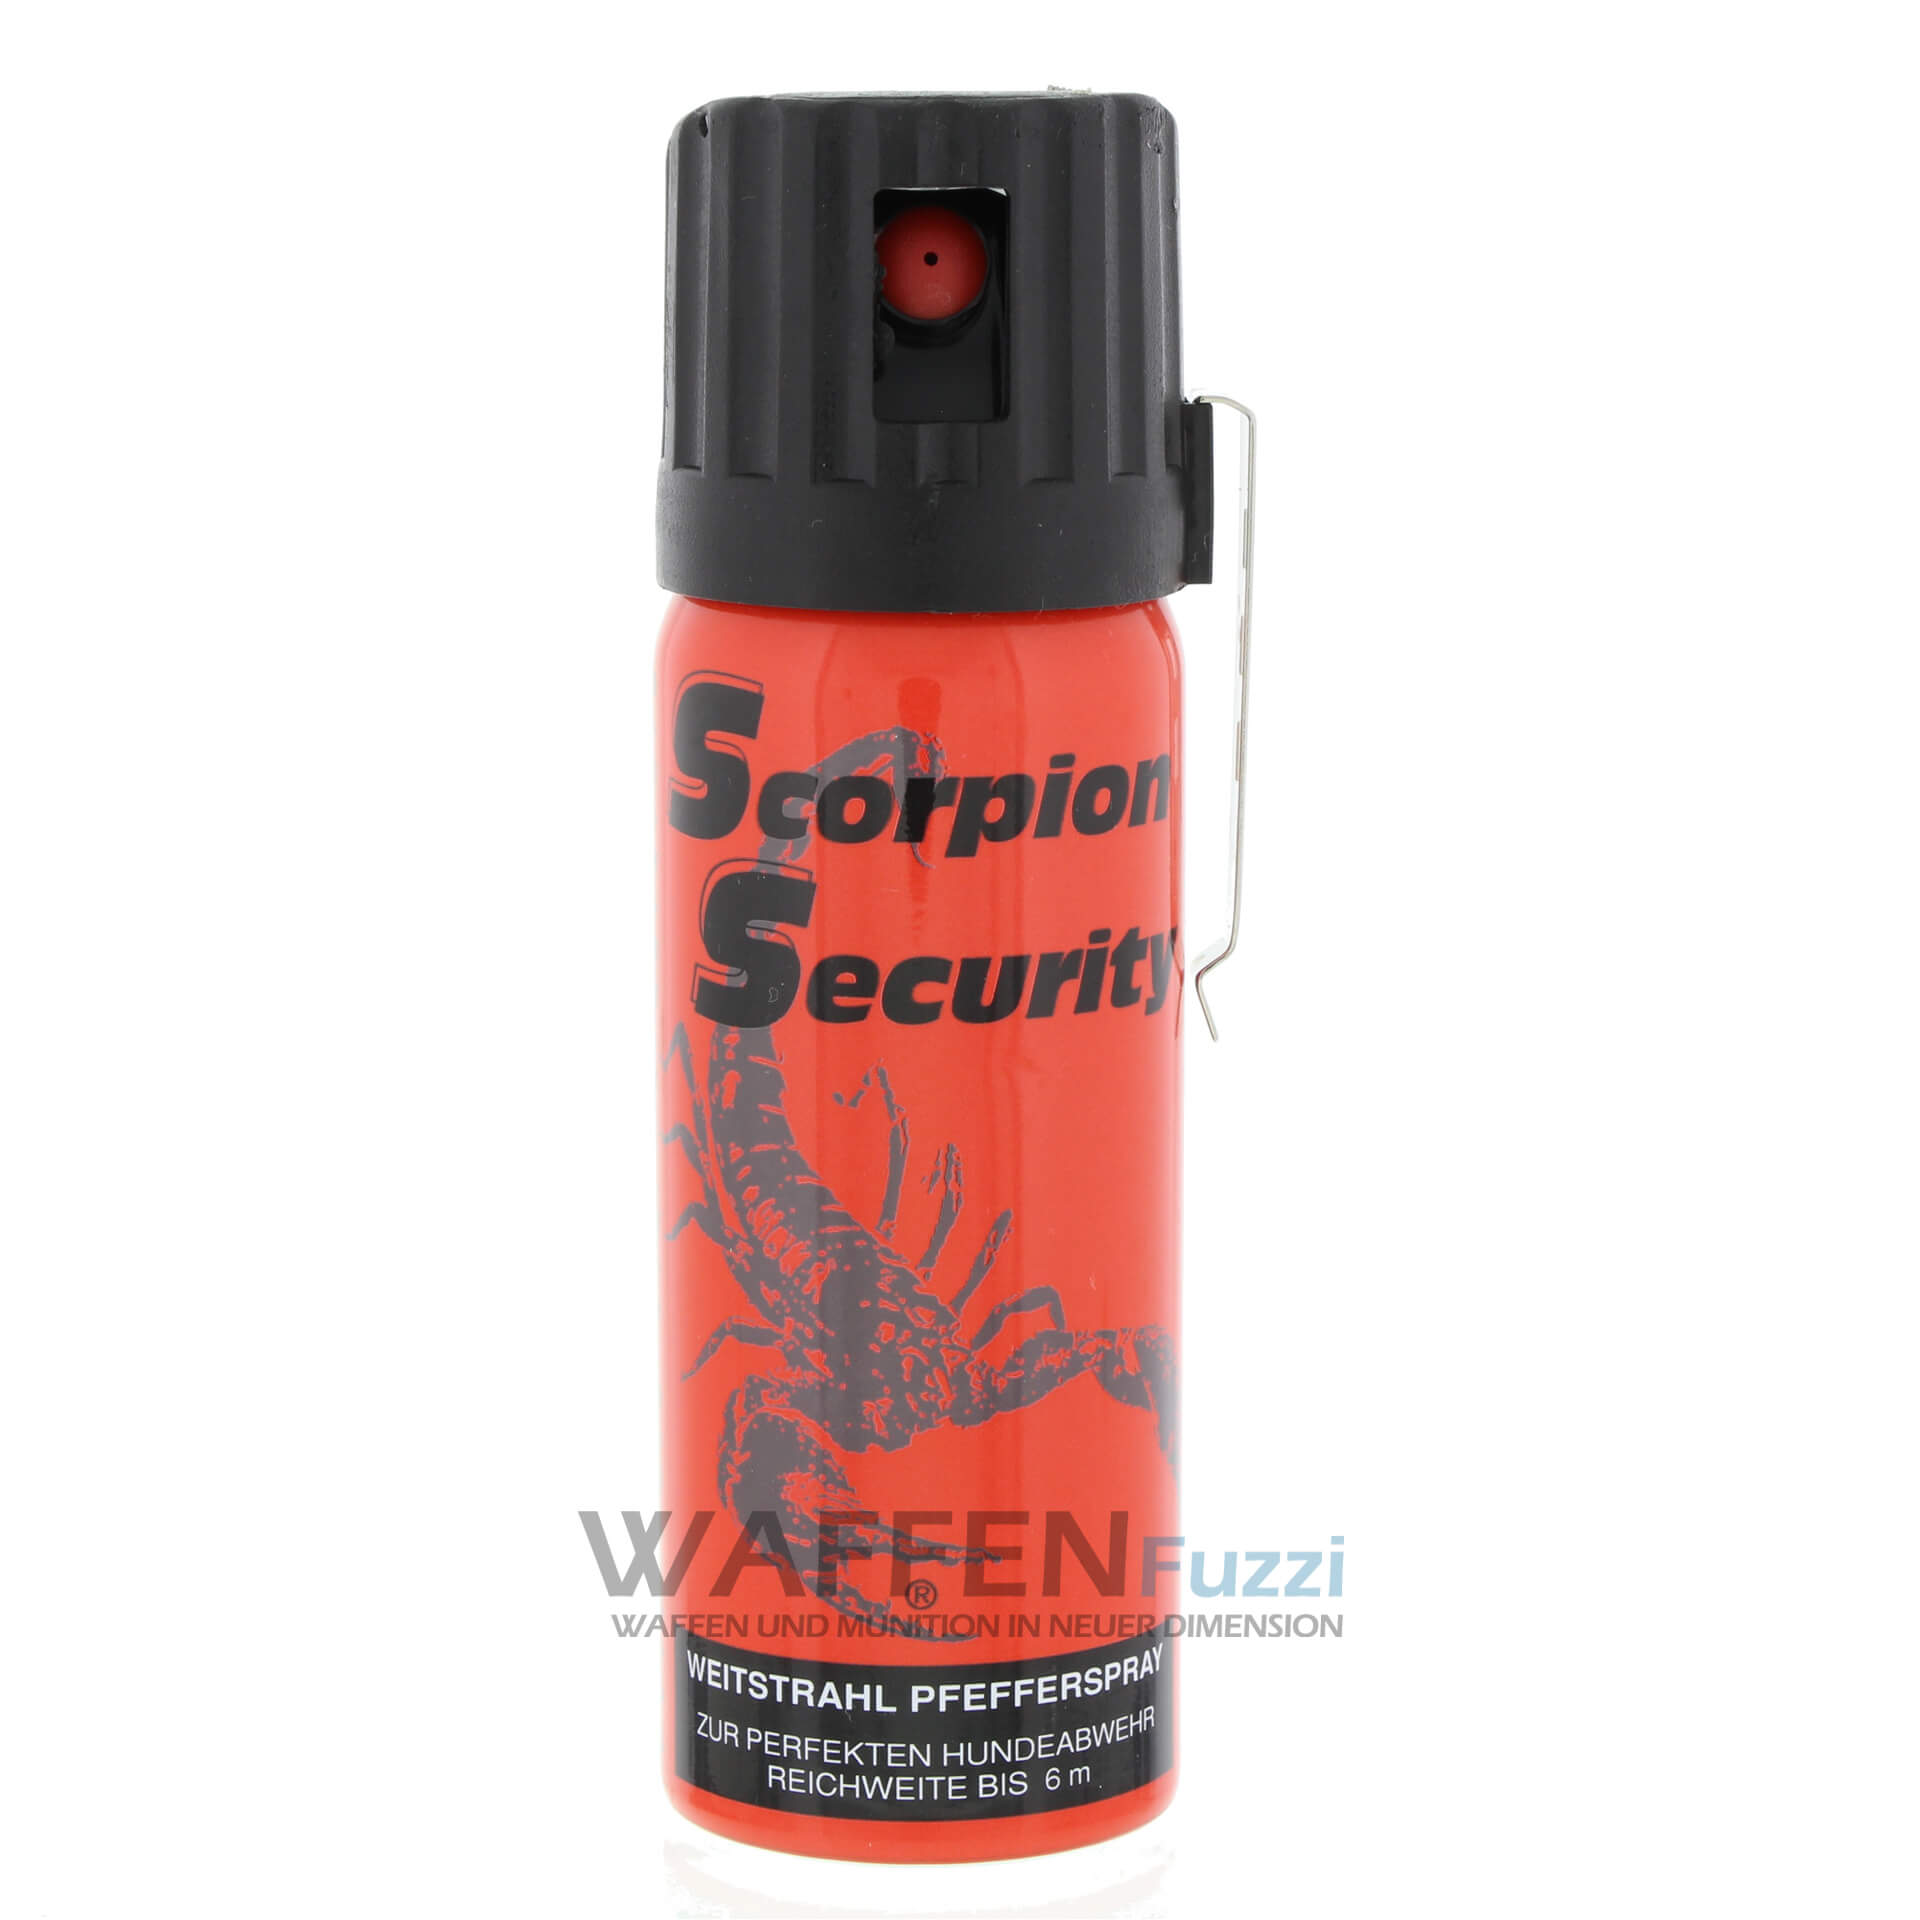 Scorpion Security Pfefferspray mit Weitstrahl 50ml